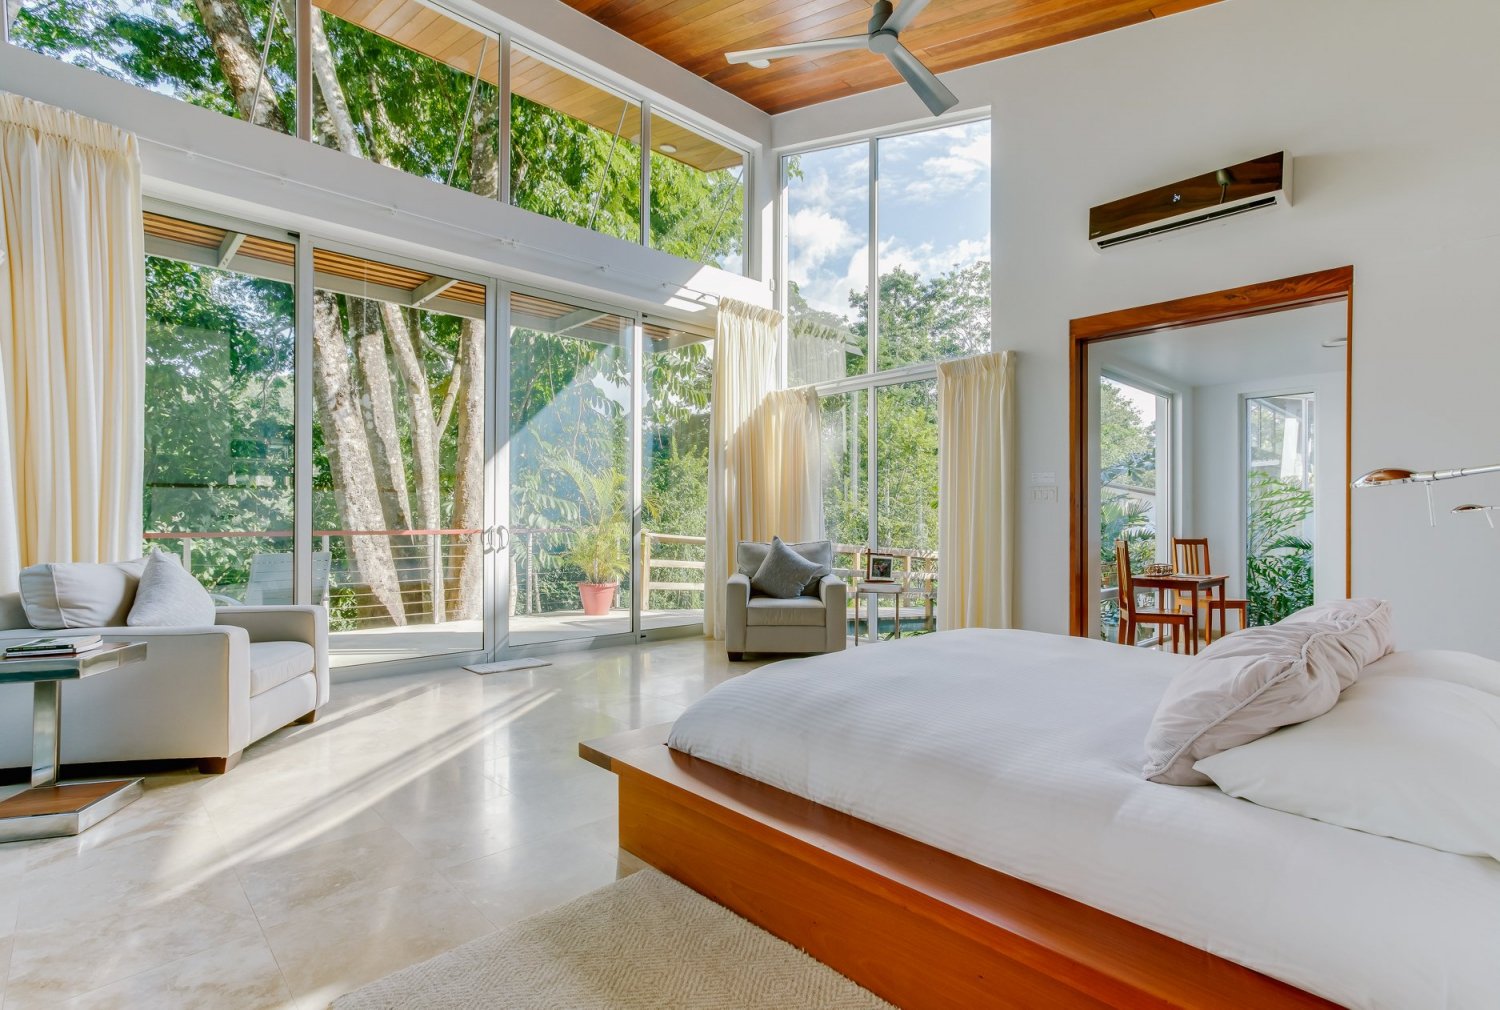 Best Hotels for Honeymoon getaway in Belize